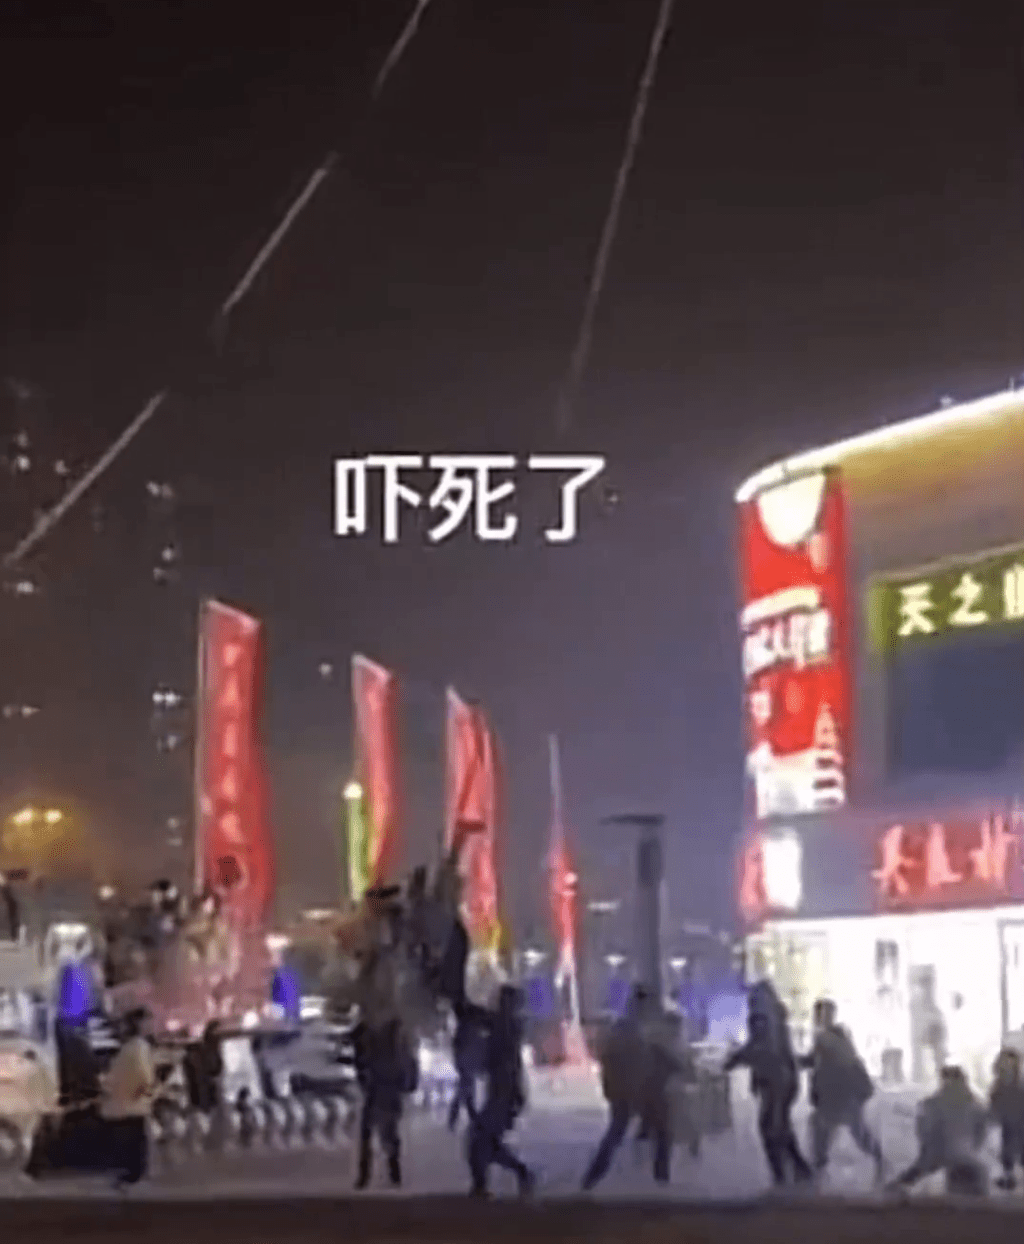 網民發布影片，一名男子腳纏熱氣球繩子遭倒掛空中1米高。